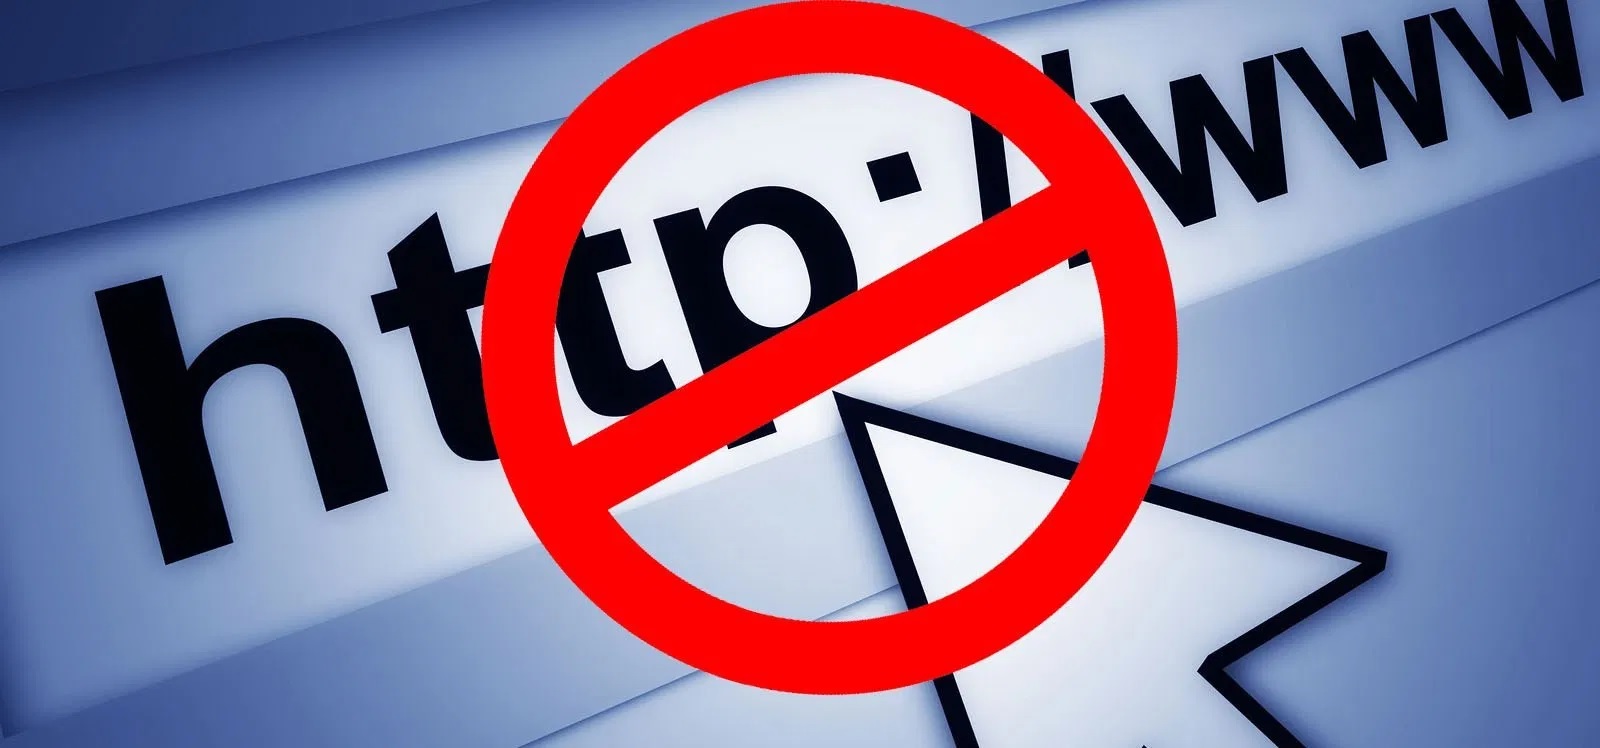 Cara Membuka Youtube Yang Diblokir Wifi. Cara Membuka Situs yang Diblokir di PC Windows 10 -